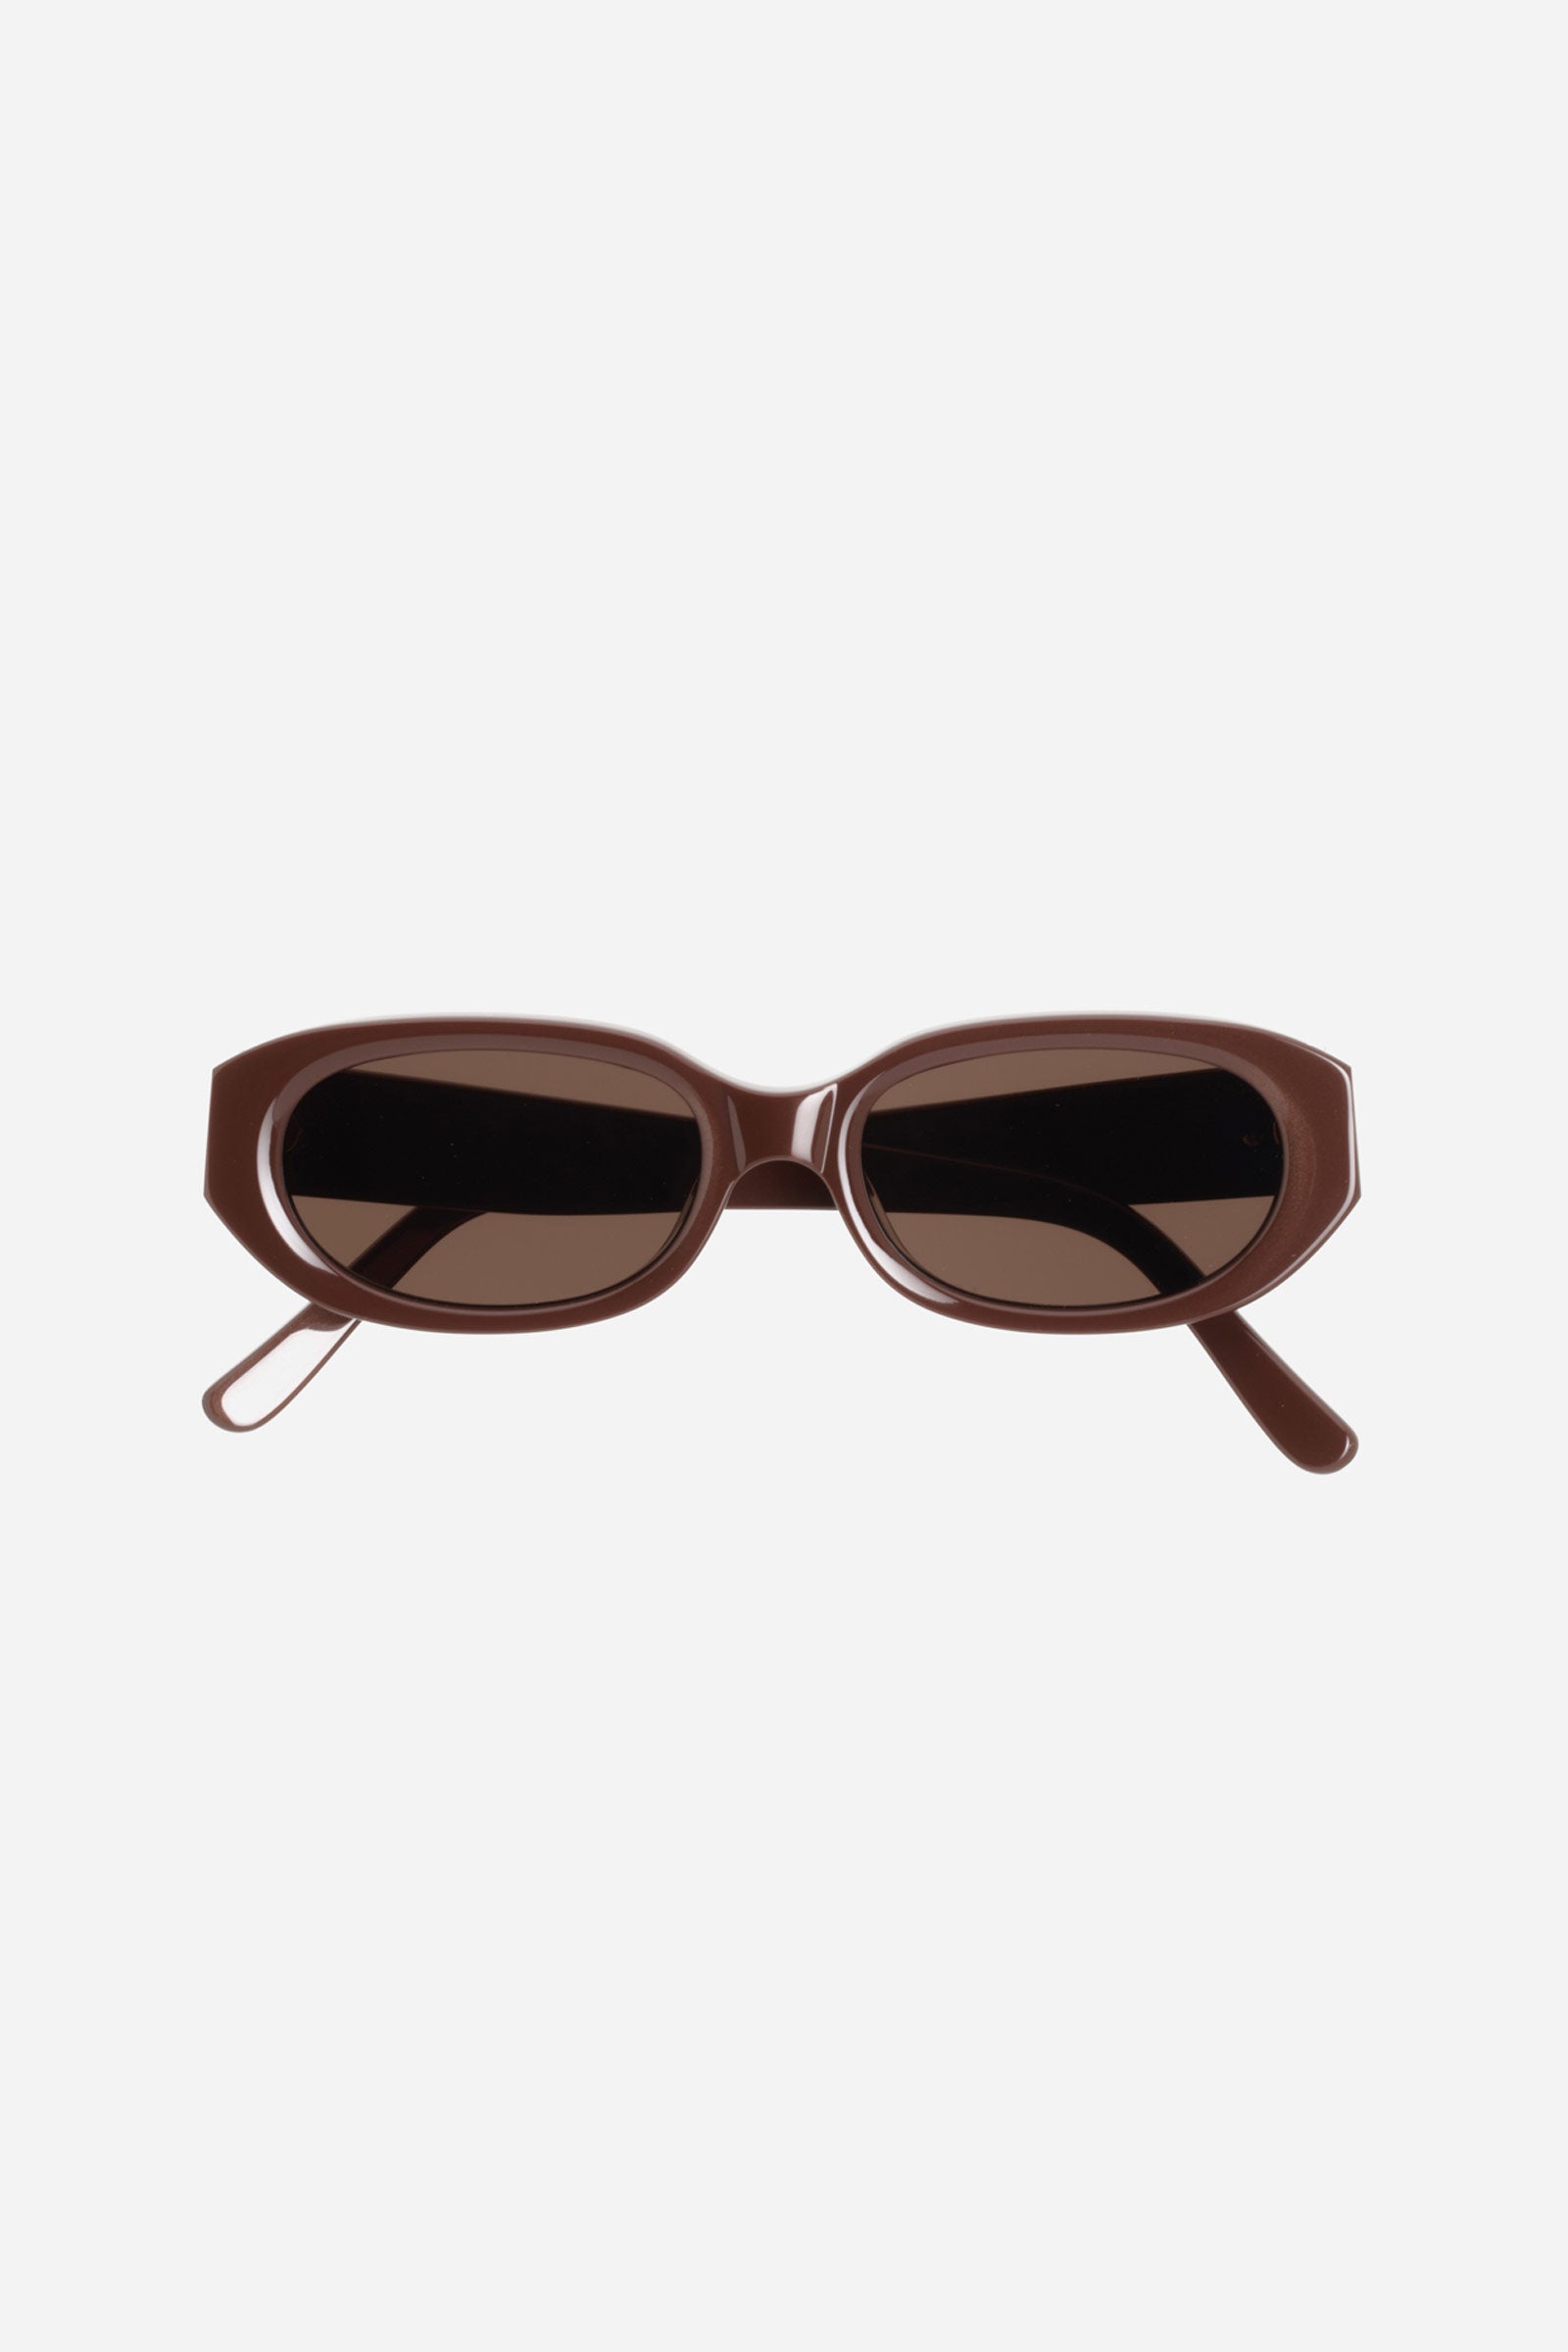 Mannequin Sunglasses Cacao